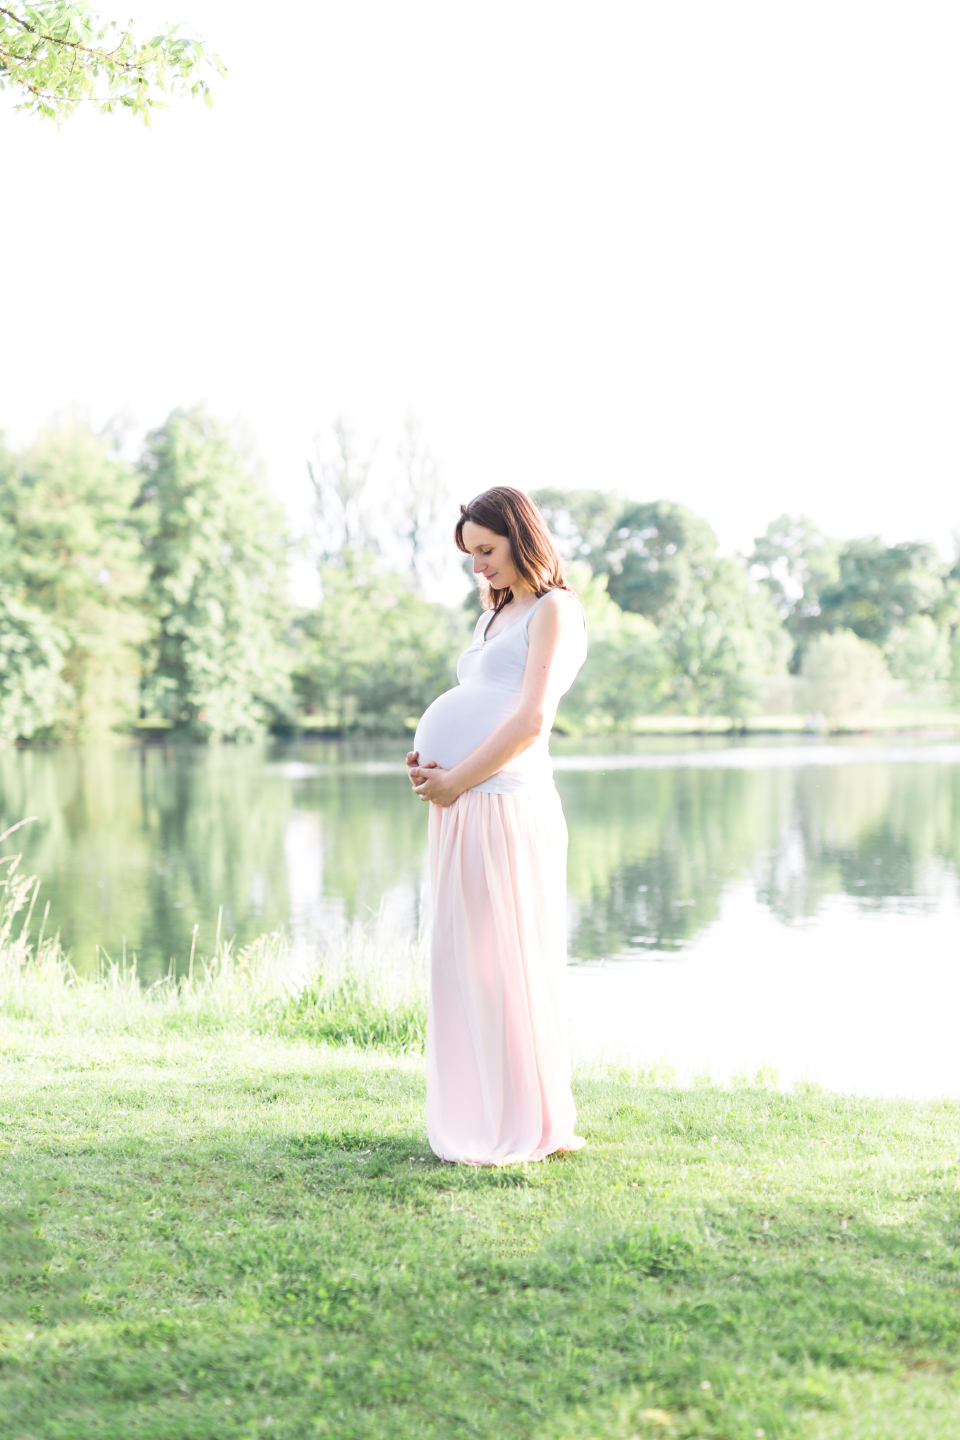 Séance photo maternité en extérieur - Photographe de grossesse à Tours Entre Nous Photographie